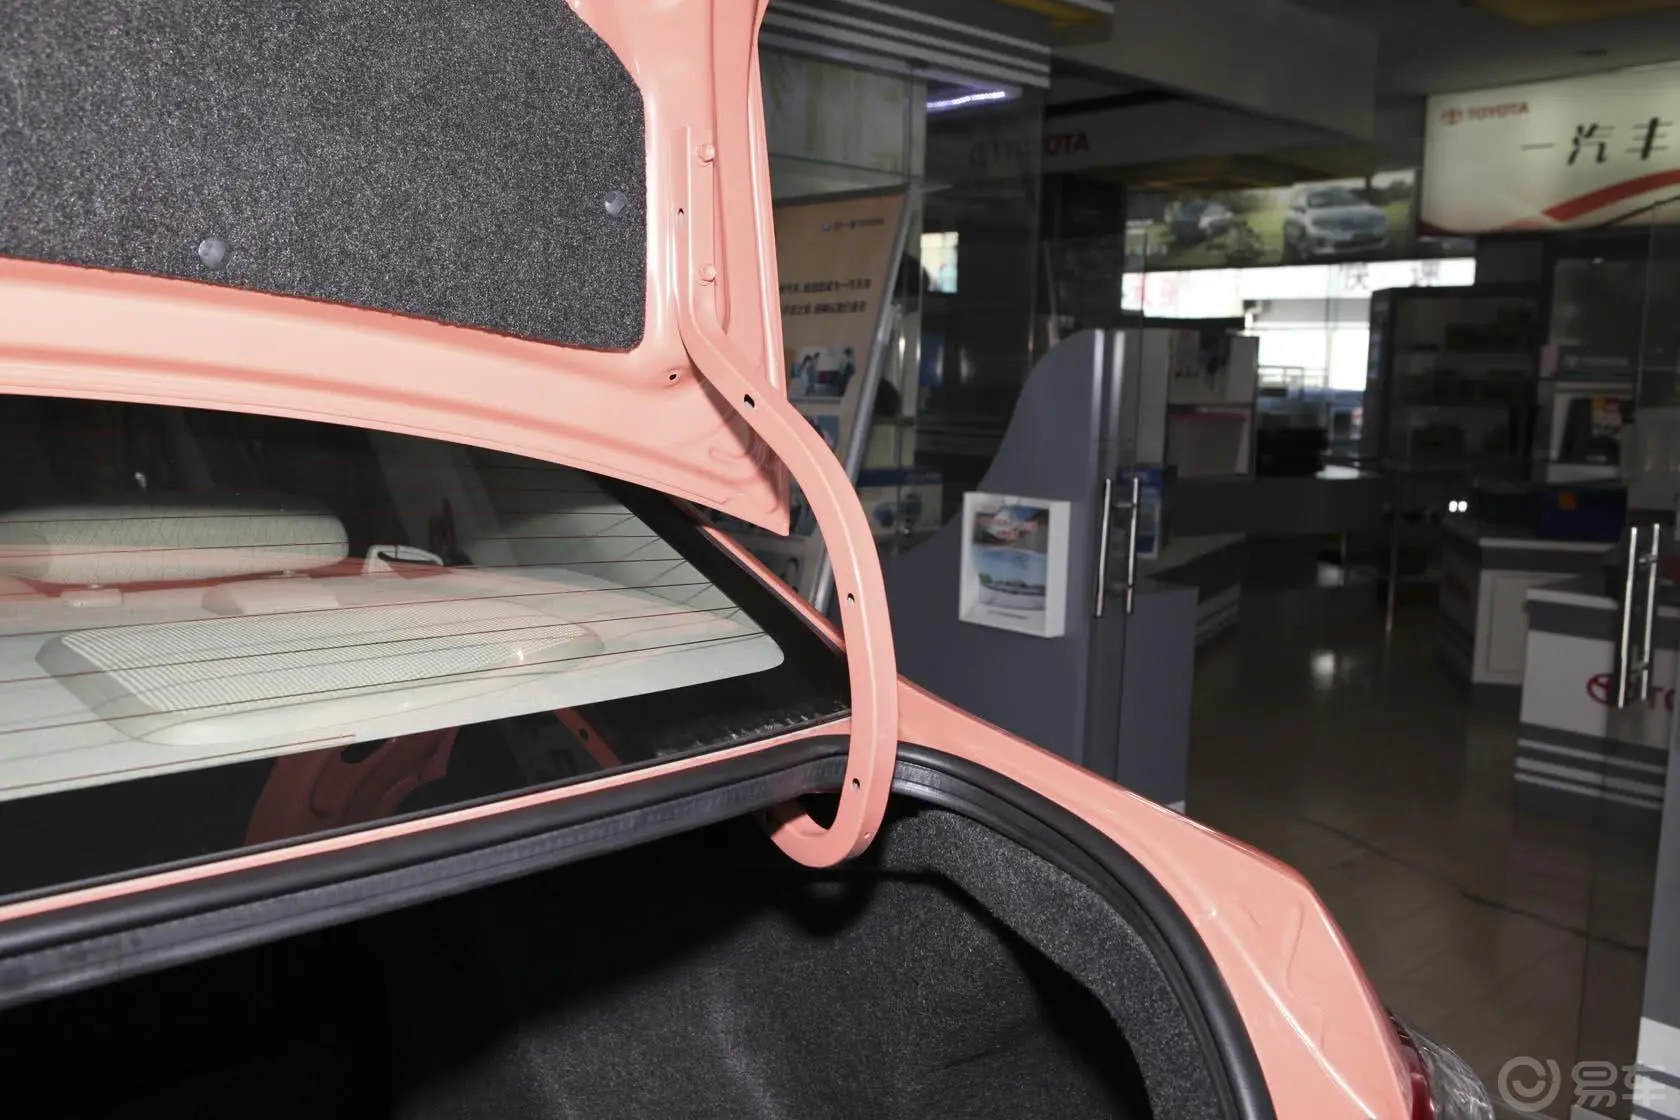 威驰1.6L GL-i 自动 型尚天窗版空间